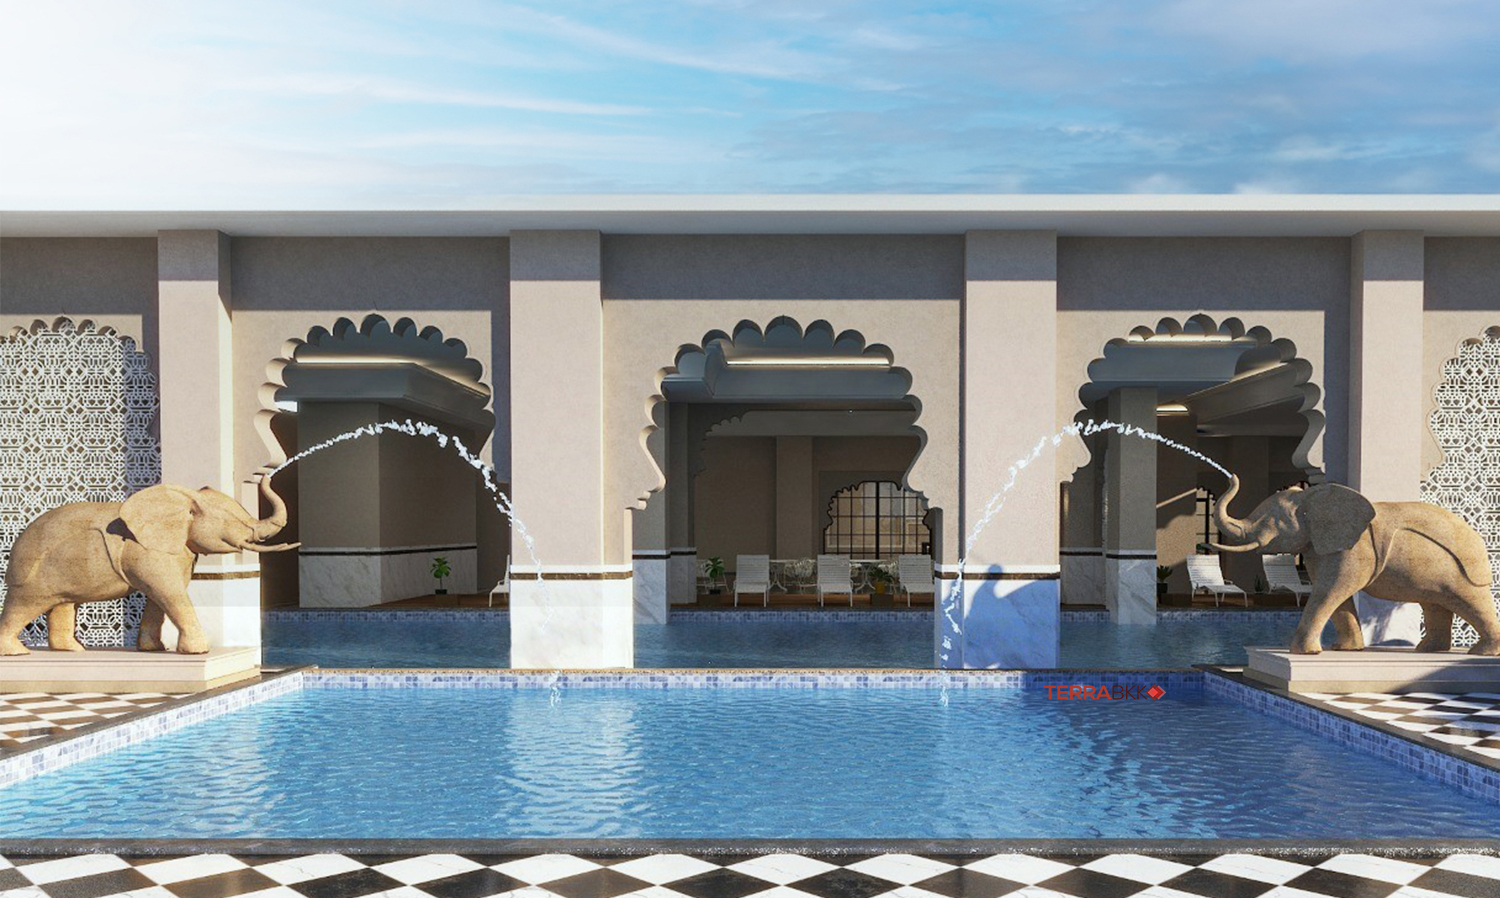 ไมเนอร์ โฮเทลส์ เตรียมเปิดโรงแรมอนันตรา จัยปูร์  โรงแรมอนันตราแห่งแรกในอินเดียในไตรมาสที่ 4 ของปี 2566